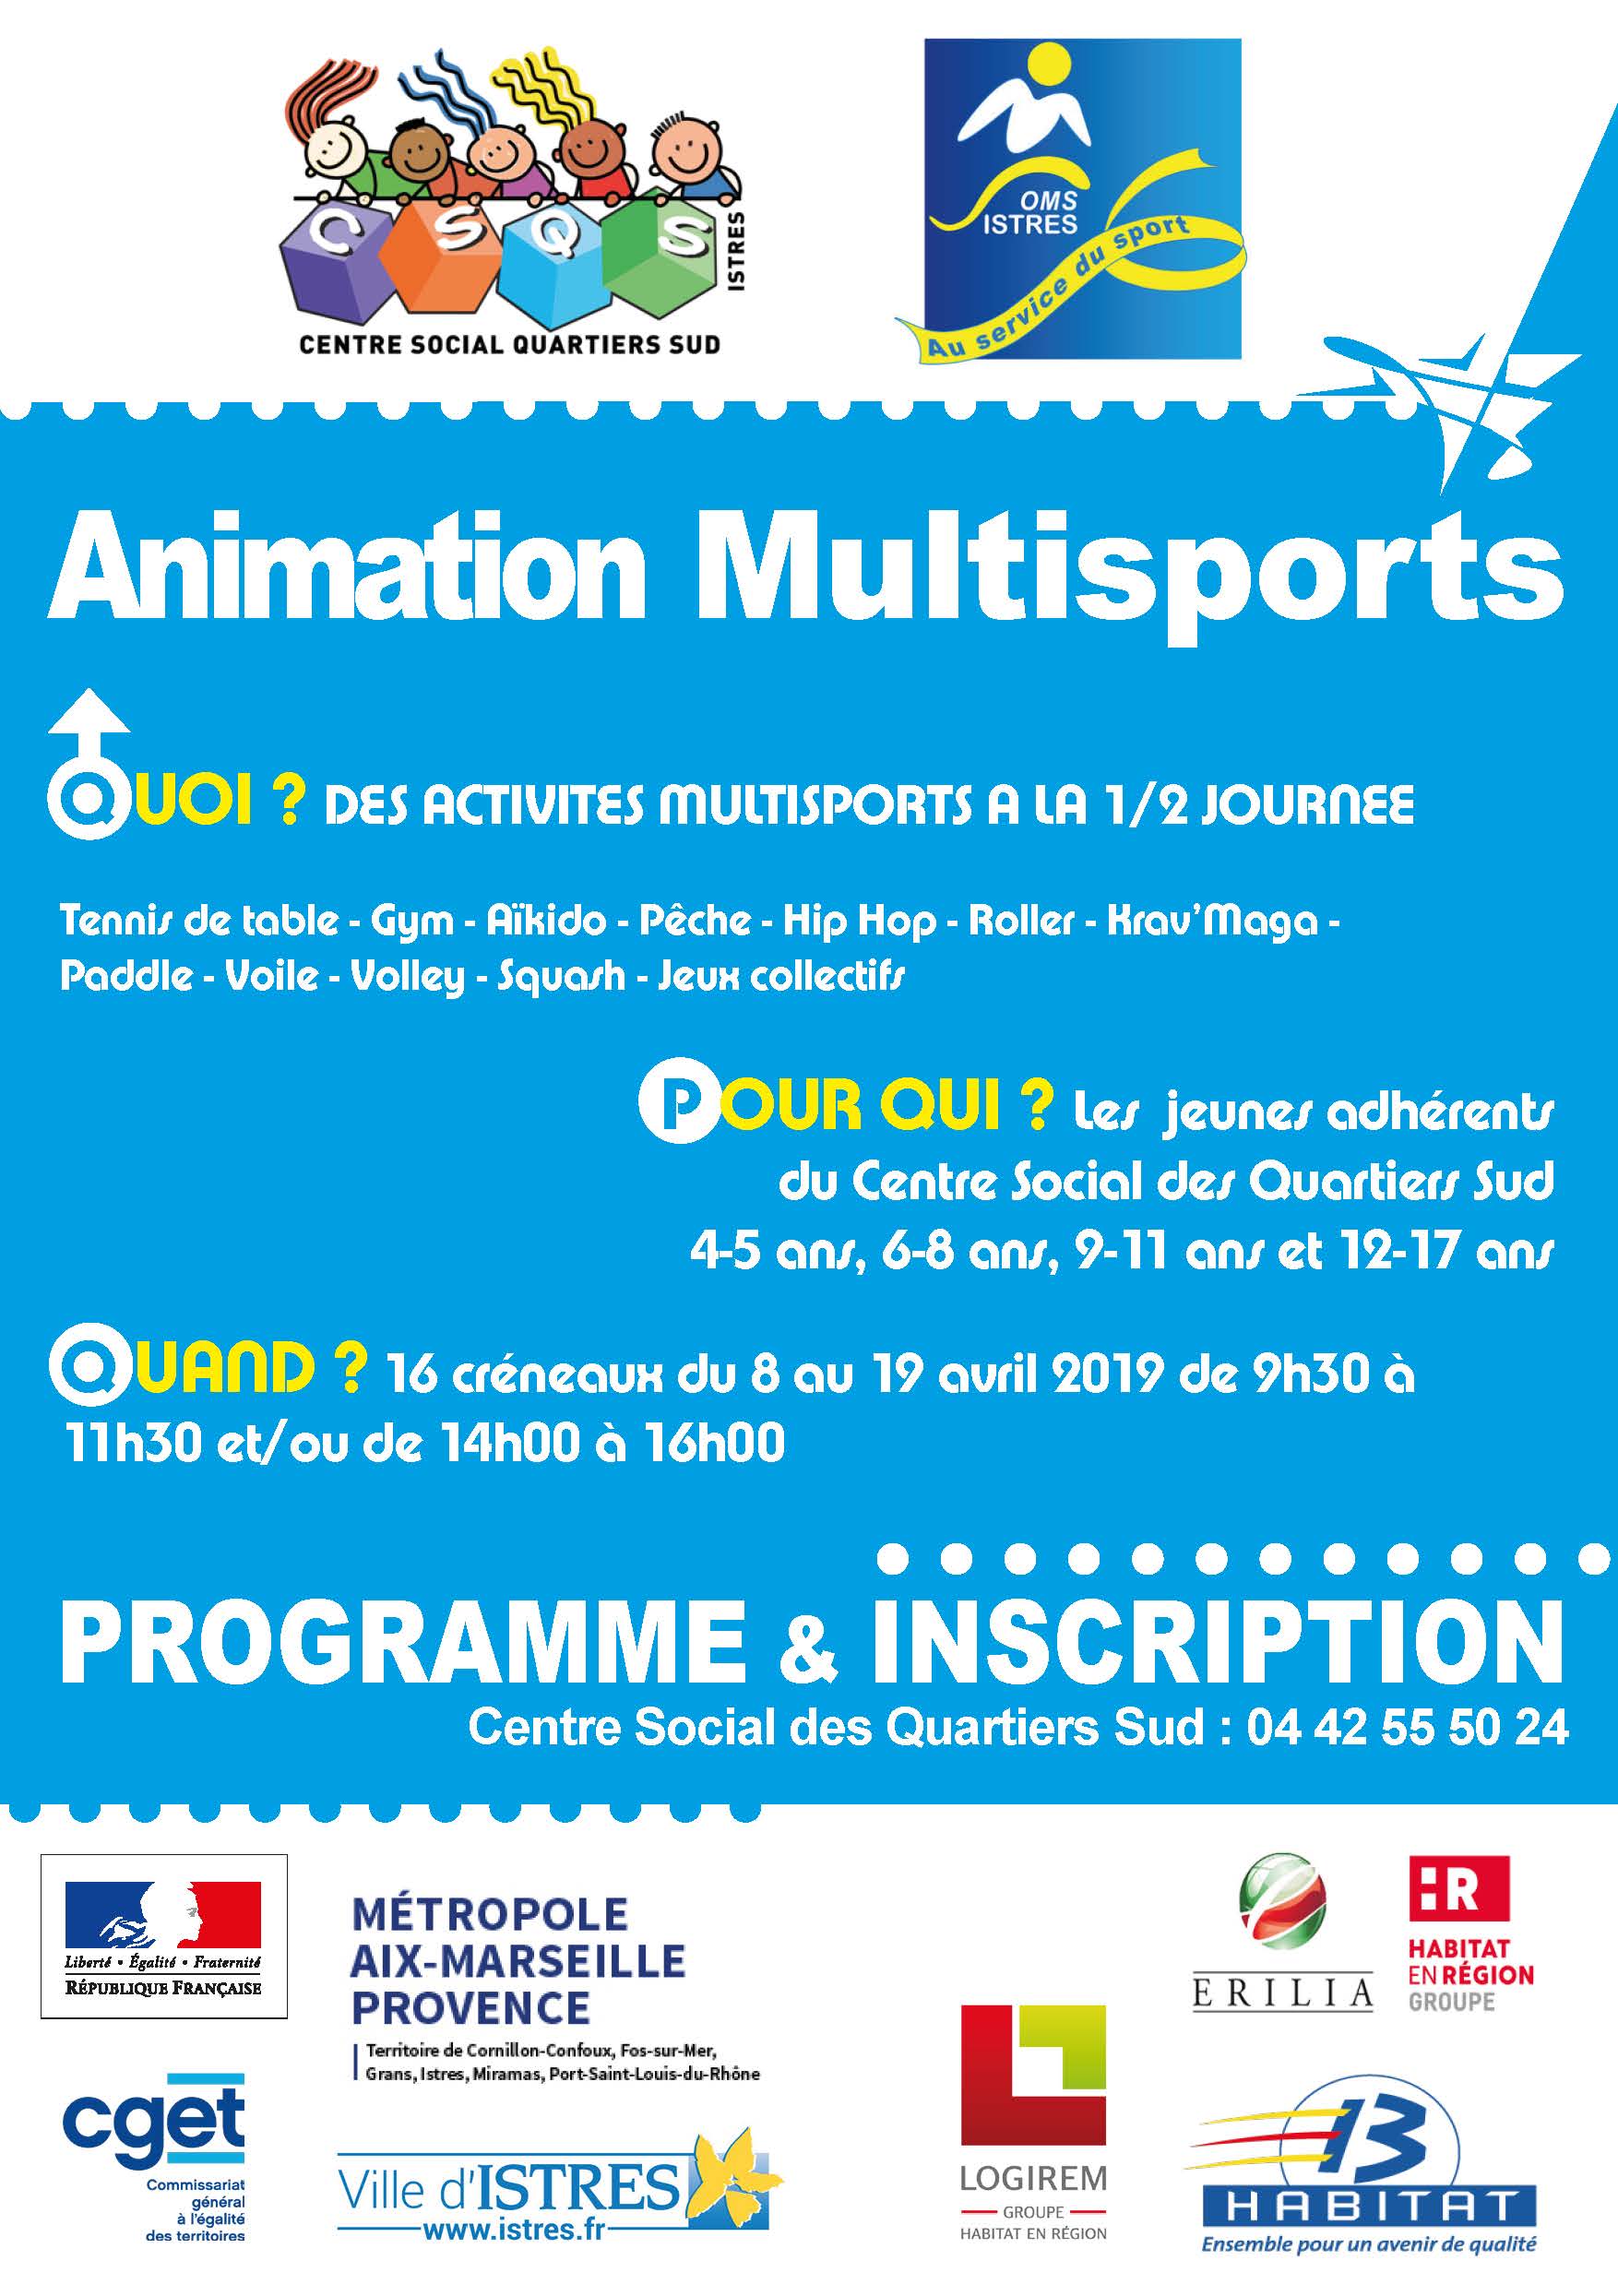 Animations multisports au Centre social des Quartiers Sud à Istres pendant les vacances d'avril